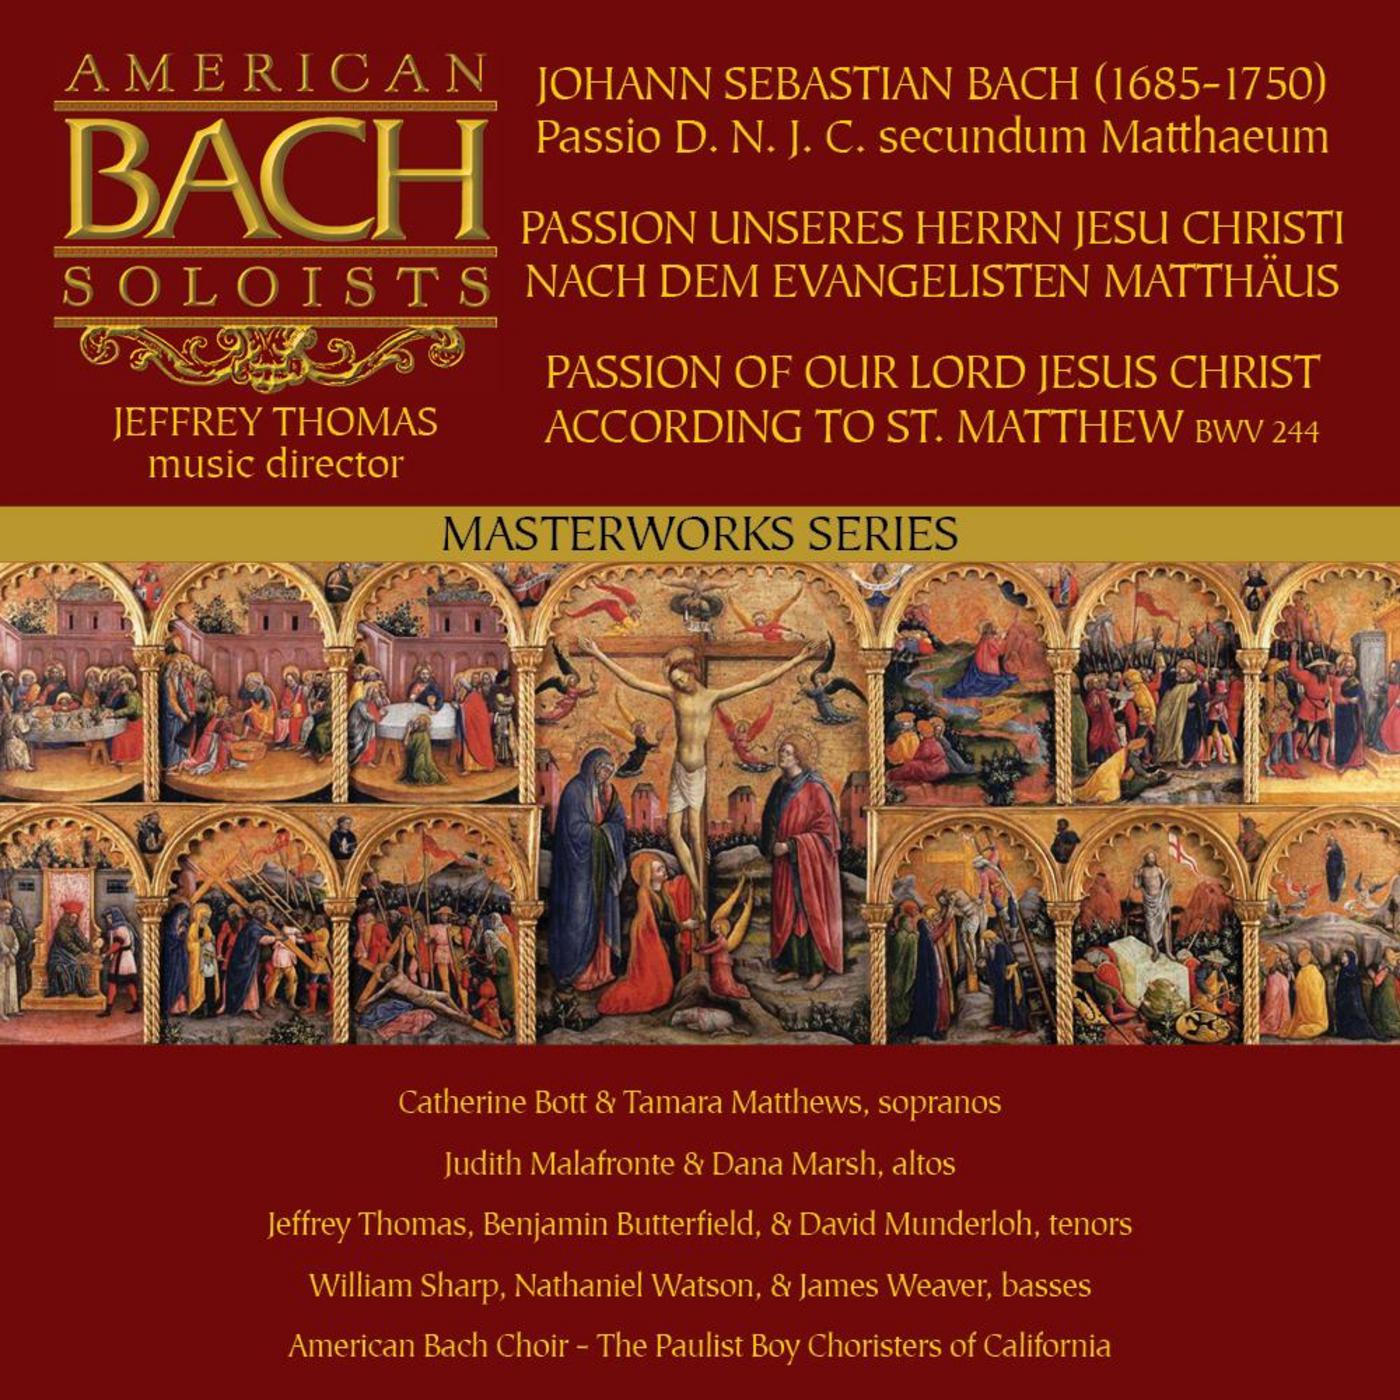 St Matthew Passion, BWV 244 67. Recitativo Soli I, Coro II: Nun ist der Herr zur Ruh gebracht